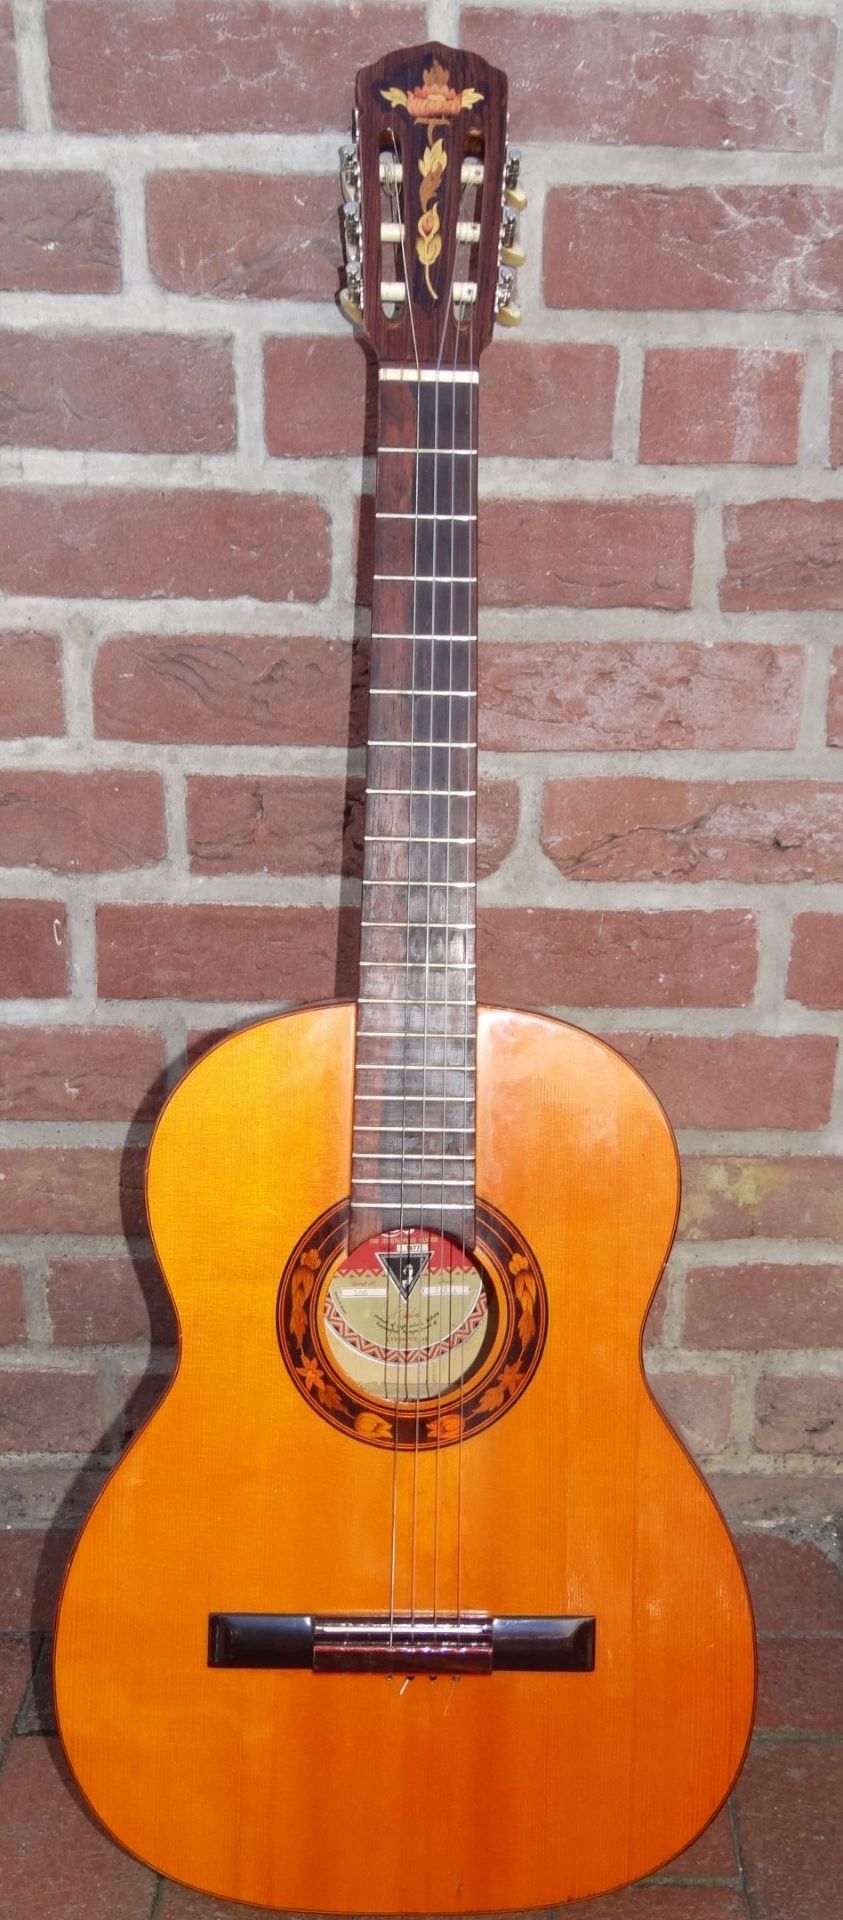 Klassische Konzertgitarre "Som Dhouro-Bahia", gut erhalten, L-99 cm- - -22.61 % buyer's premium on